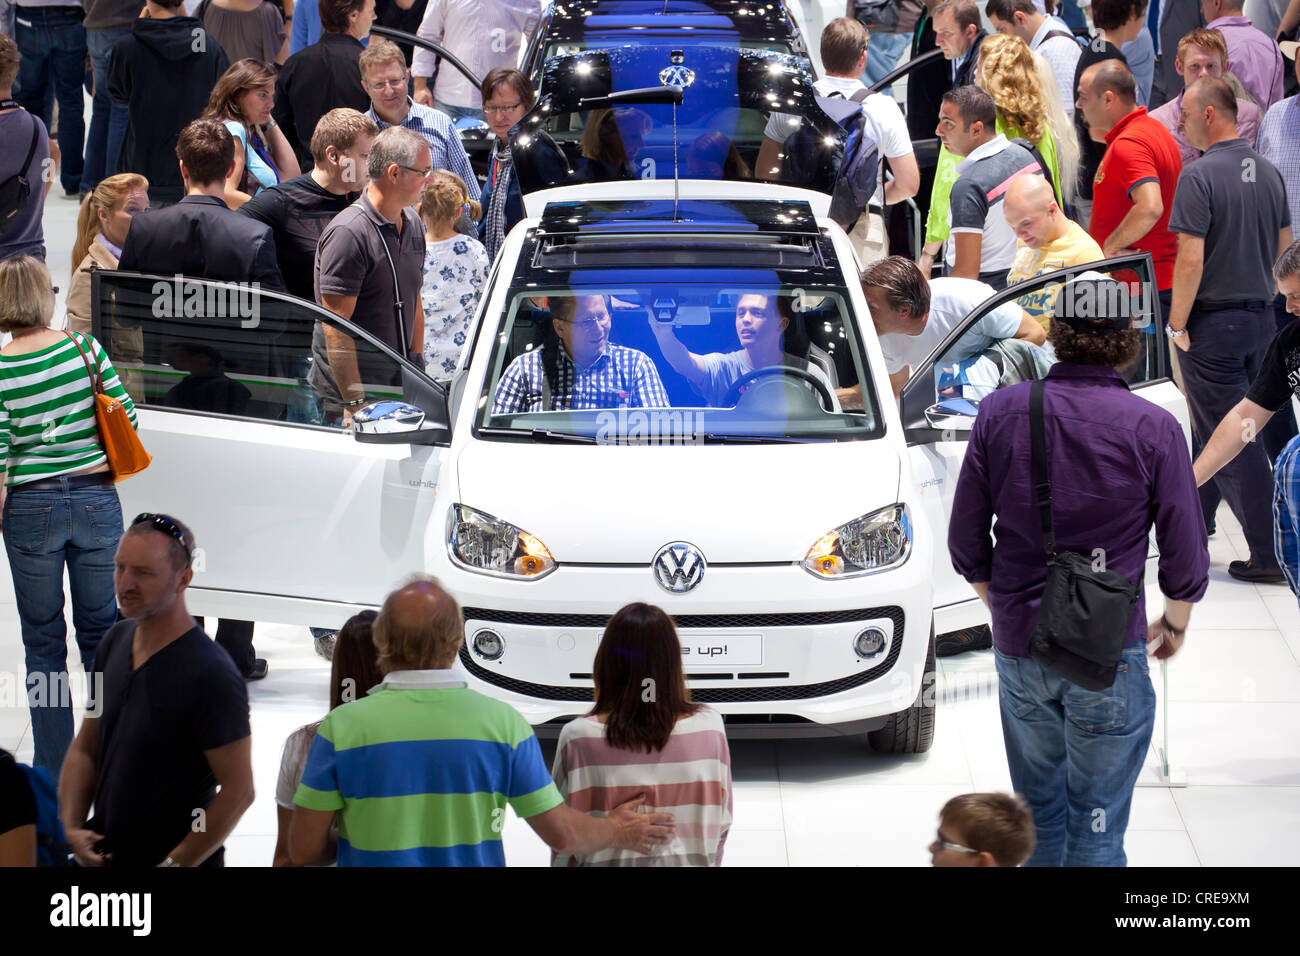 Volkswagen, VW up, 64e Salon International de l'automobile, de l'AIA, 2011, Frankfurt am Main, Hesse, Germany, Europe Banque D'Images